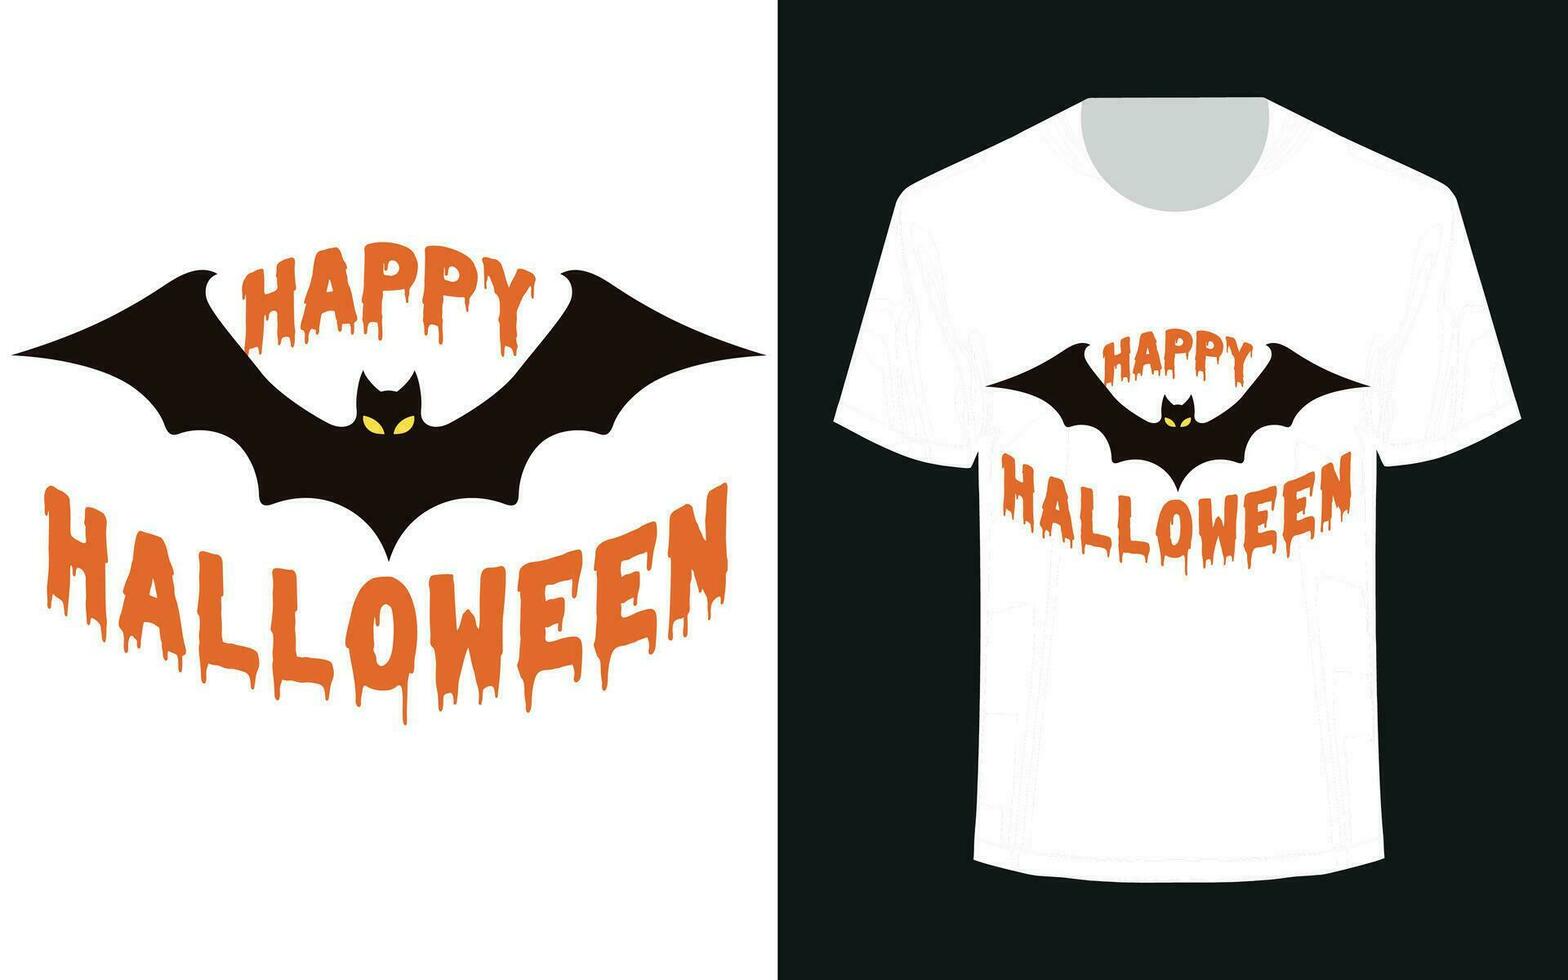 Happy Halloween t-shirt design. vector